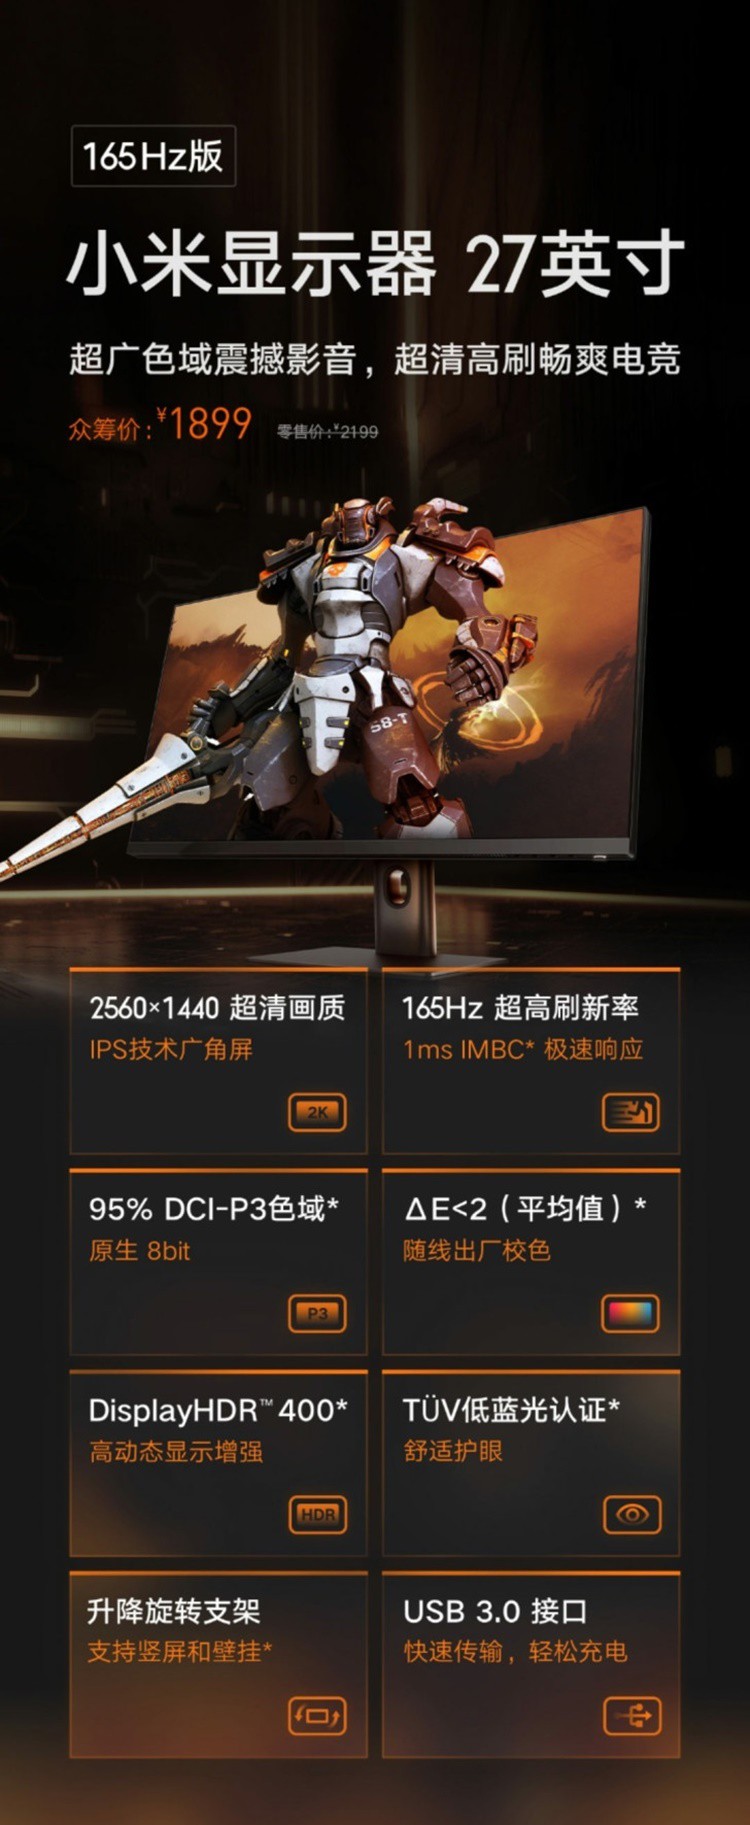 Xiaomi ra mắt màn hình gaming 27 inch giá rẻ: 2K, tần số 165Hz, giá 309 USD ảnh 2